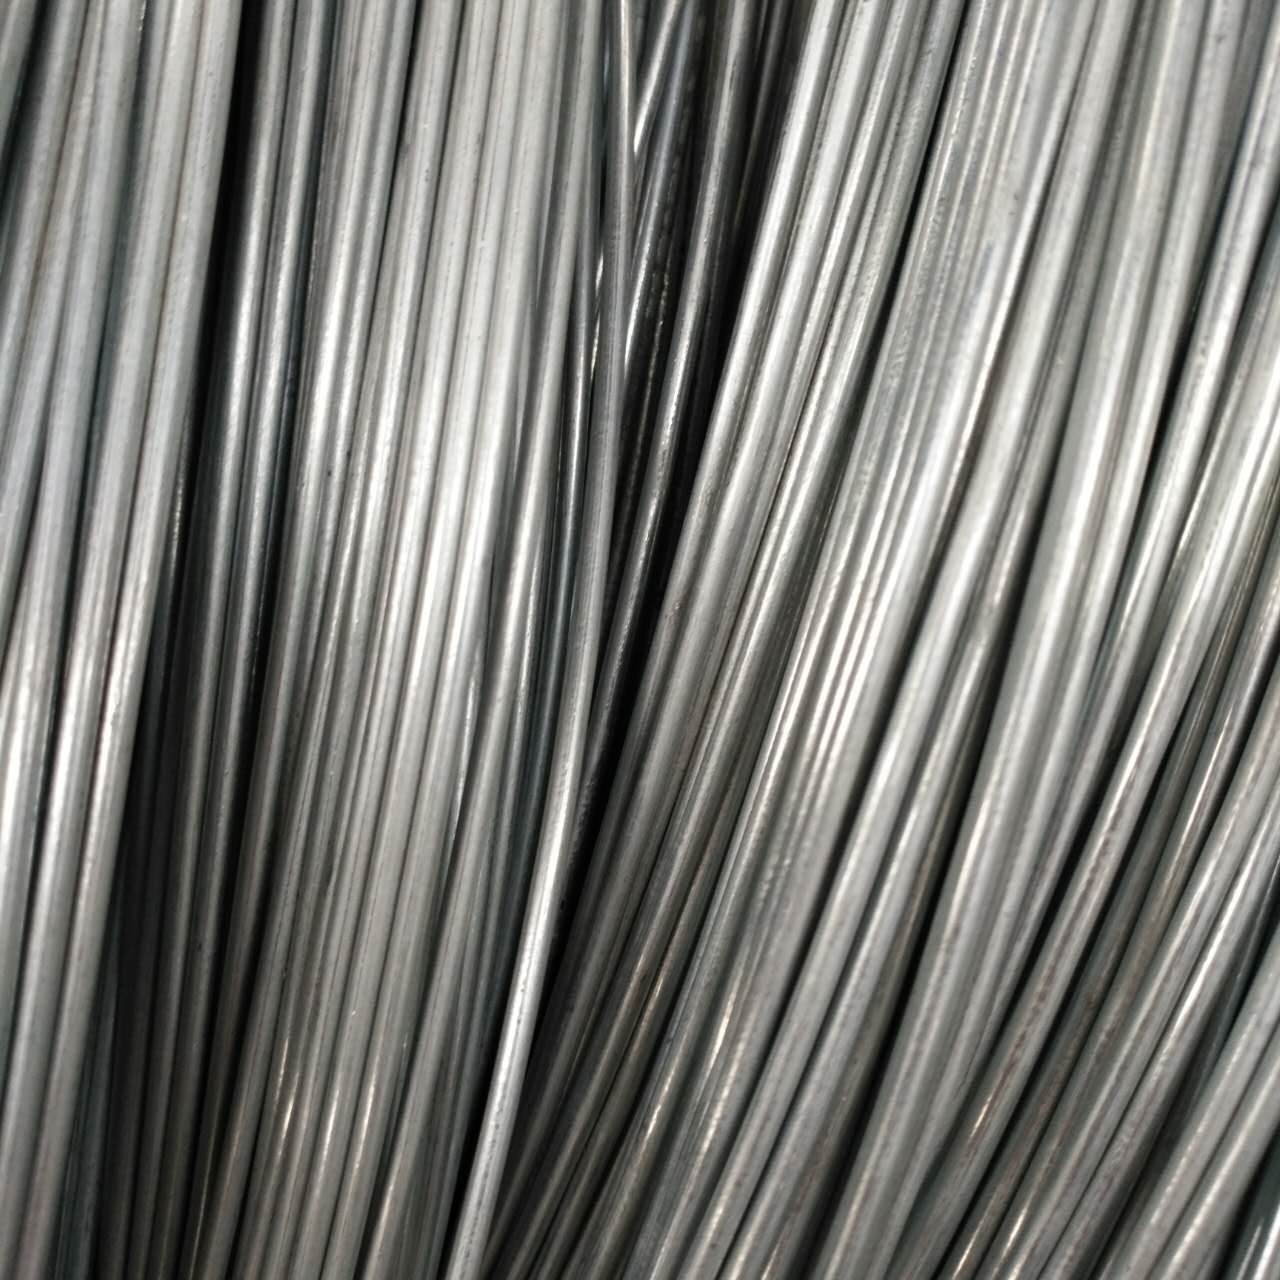 耐用强劲 14#热镀锌丝 2.1mm热镀锌铁丝 大量生产 厂家直销